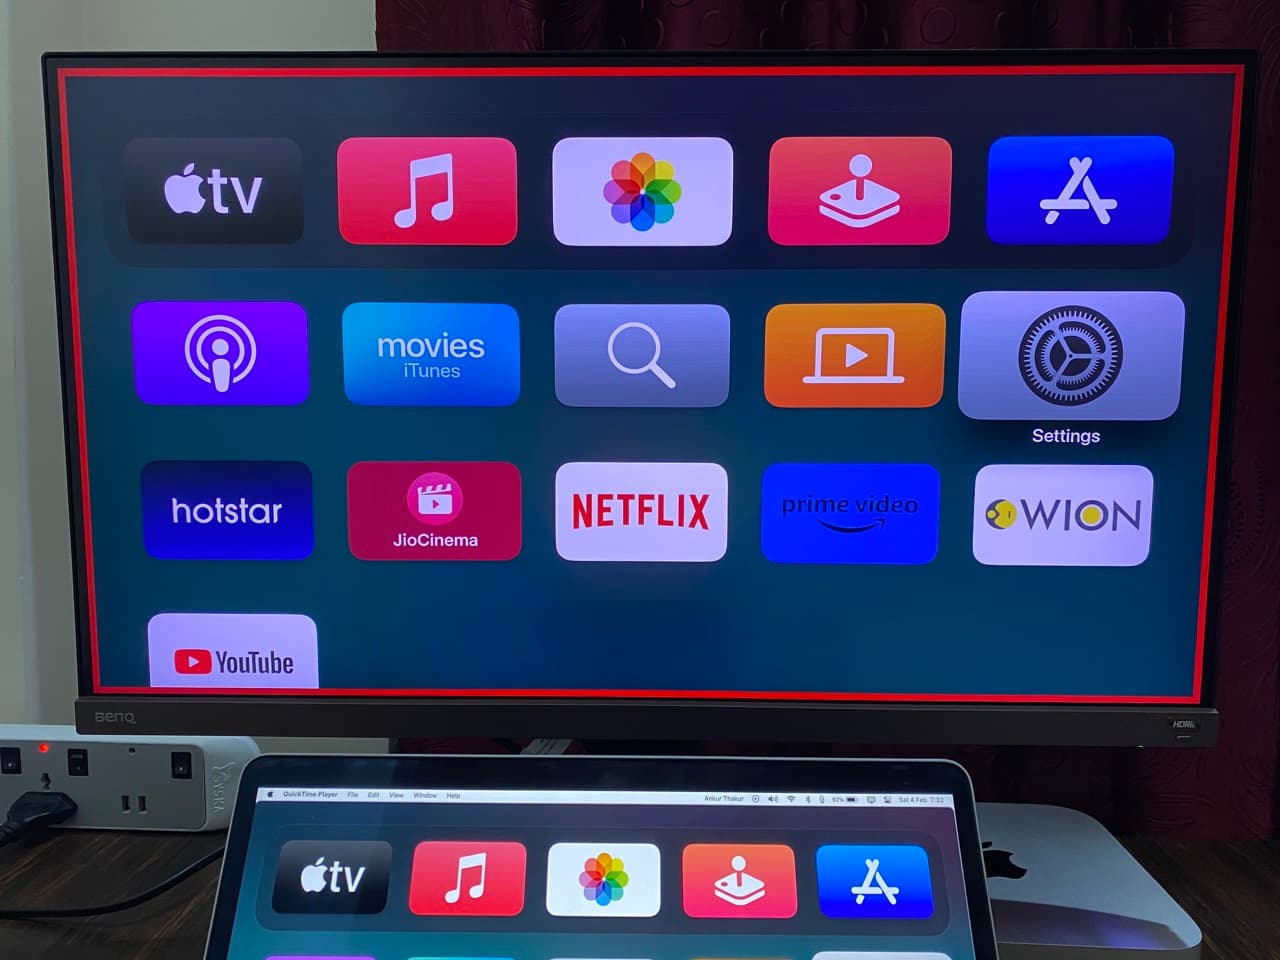 Bordure rouge tout autour de mon écran Apple TV et mon écran de télévision apparaissant sur mon MacBook, d'où je peux prendre la capture d'écran.